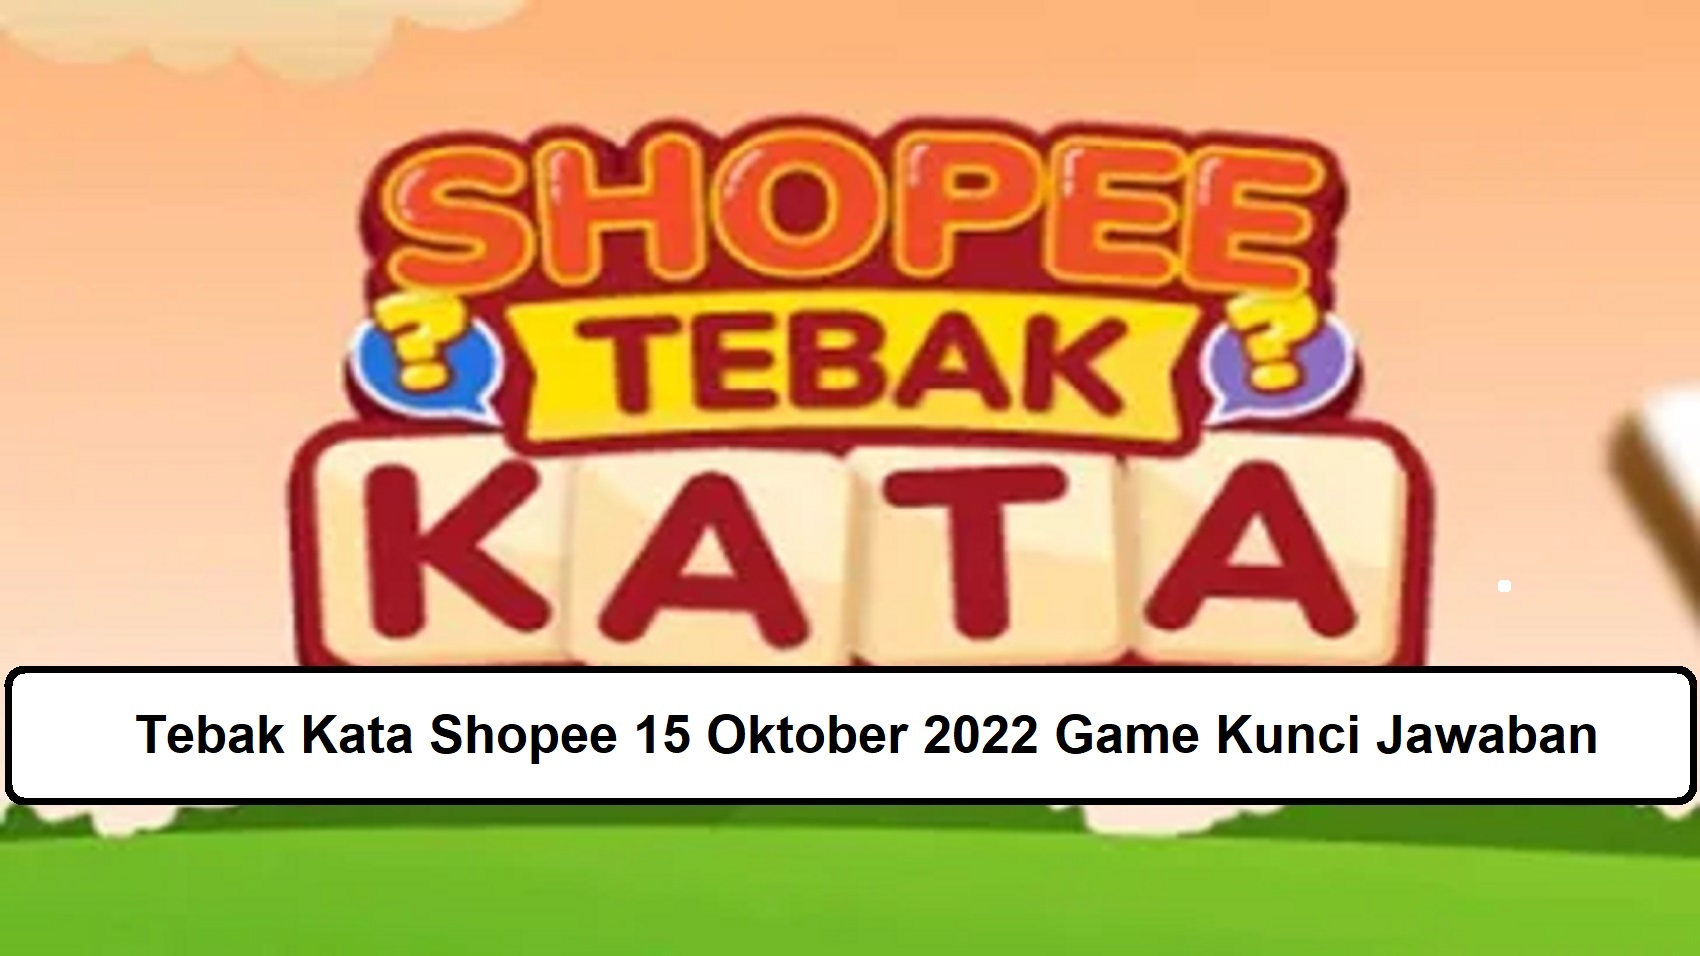 Tebak Kata Shopee 15 Oktober 2022 Game Kunci Jawaban